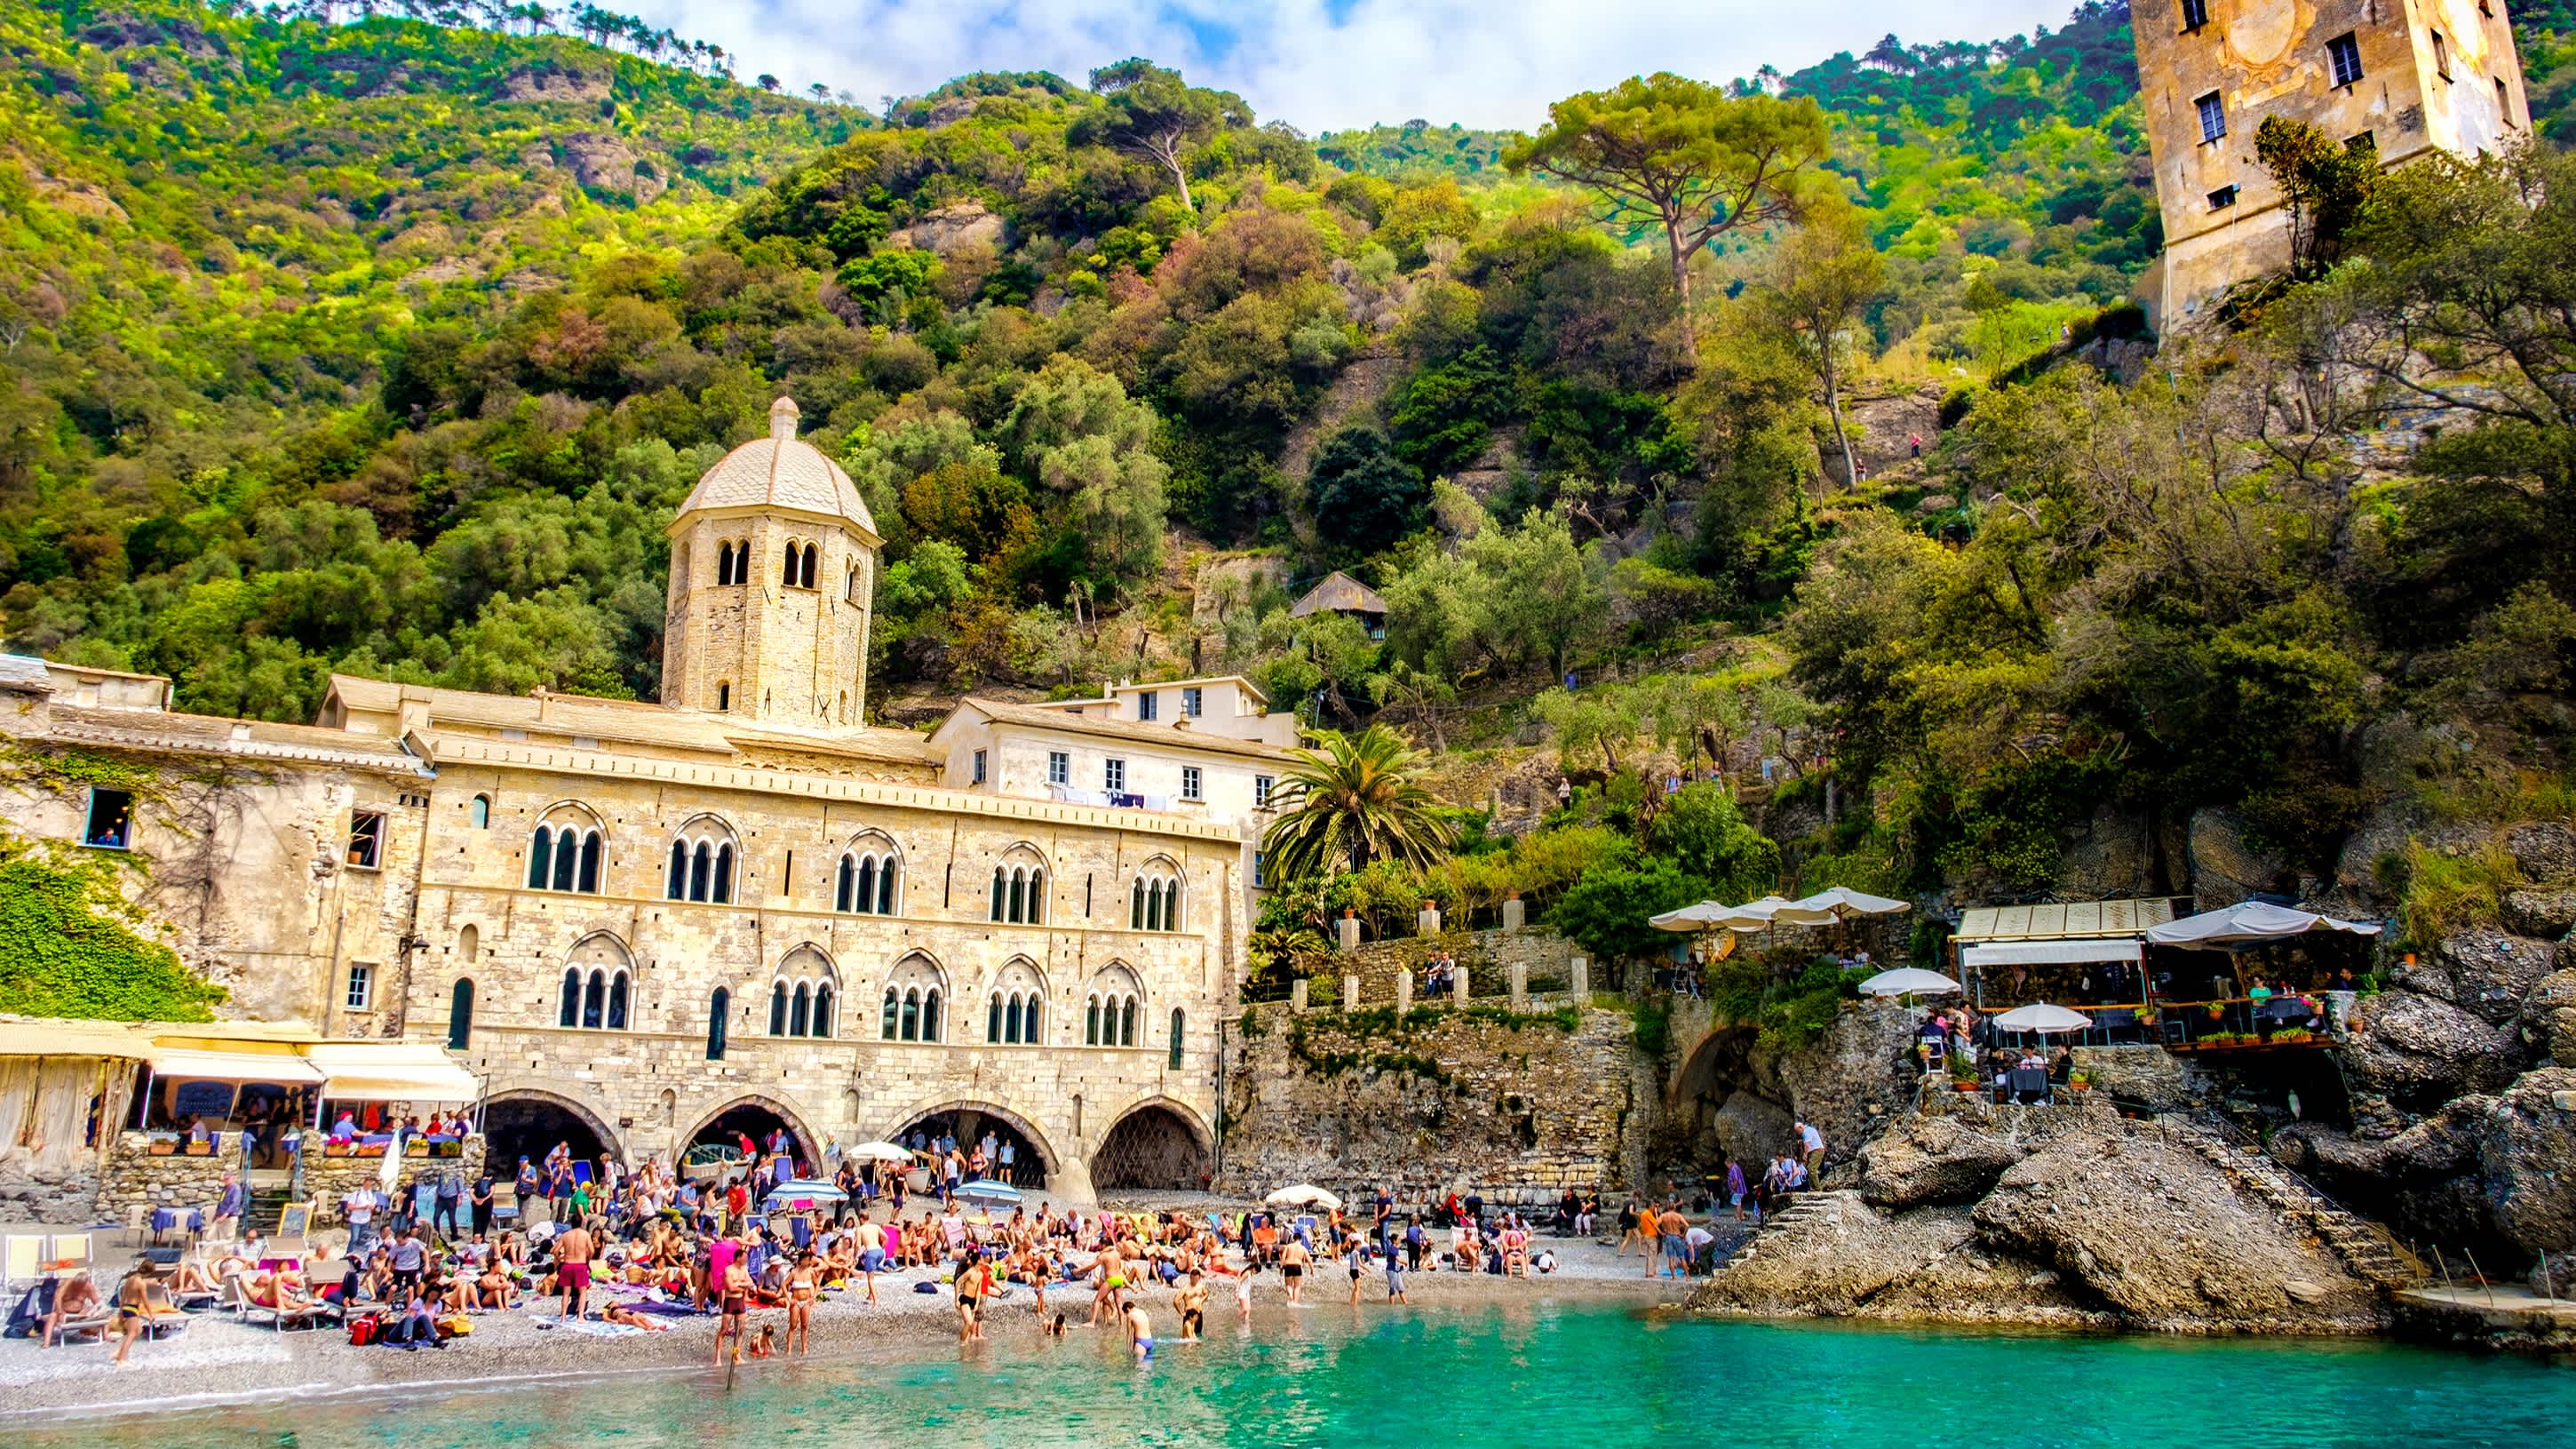 Personnes sur la plage entre Portofino et Camogli en Italie avec un abbaye médiéval entouré de végétation en arrière-plan